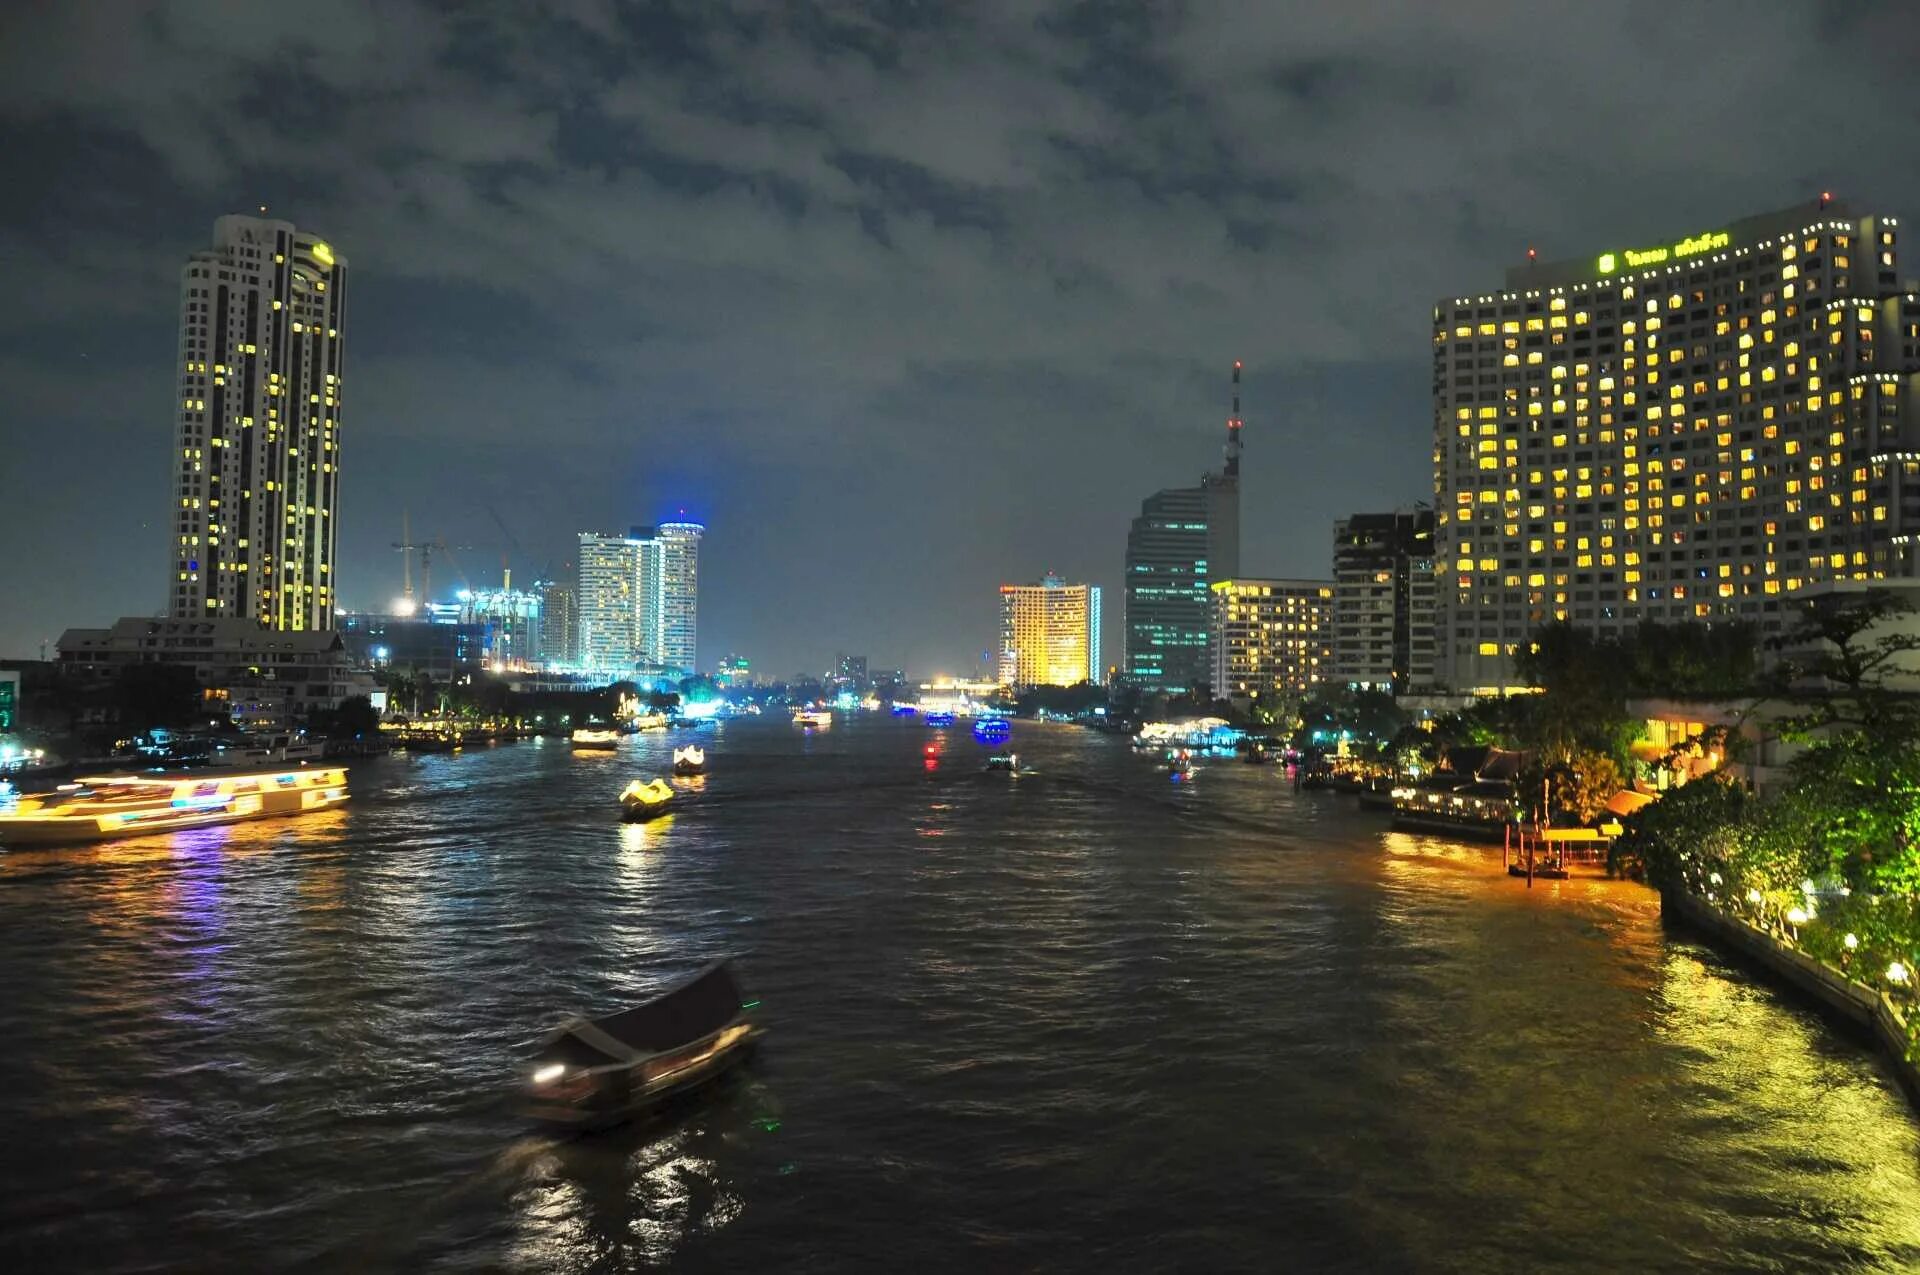 Лодки бангкока. Ночной Бангкок. Бангкок лодочные станции. Ночной Бангкок улицы. Катер в Вечернем городе.